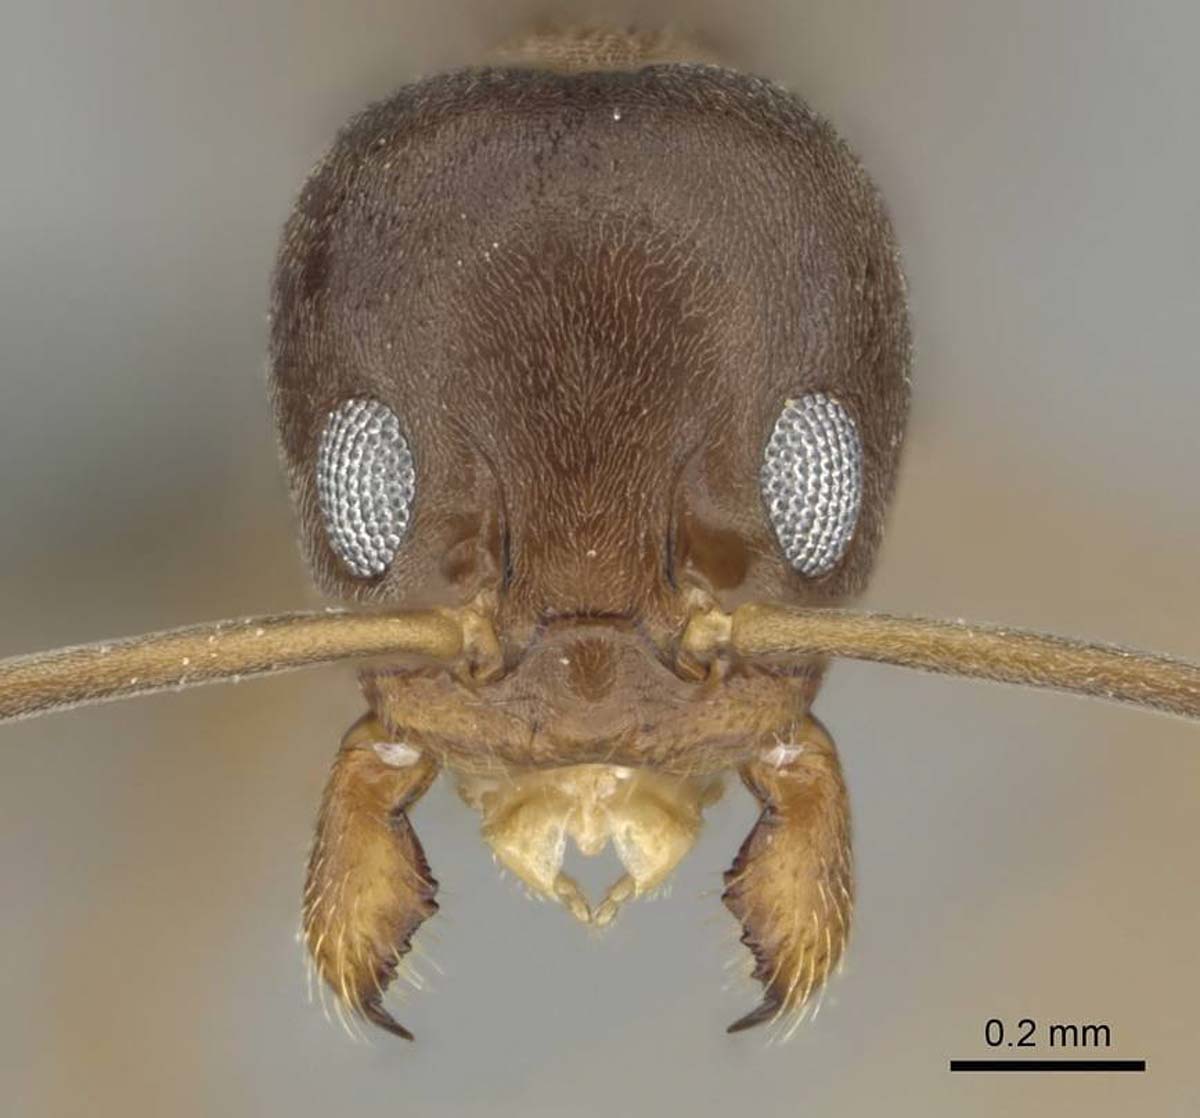 Argentine ant pest control